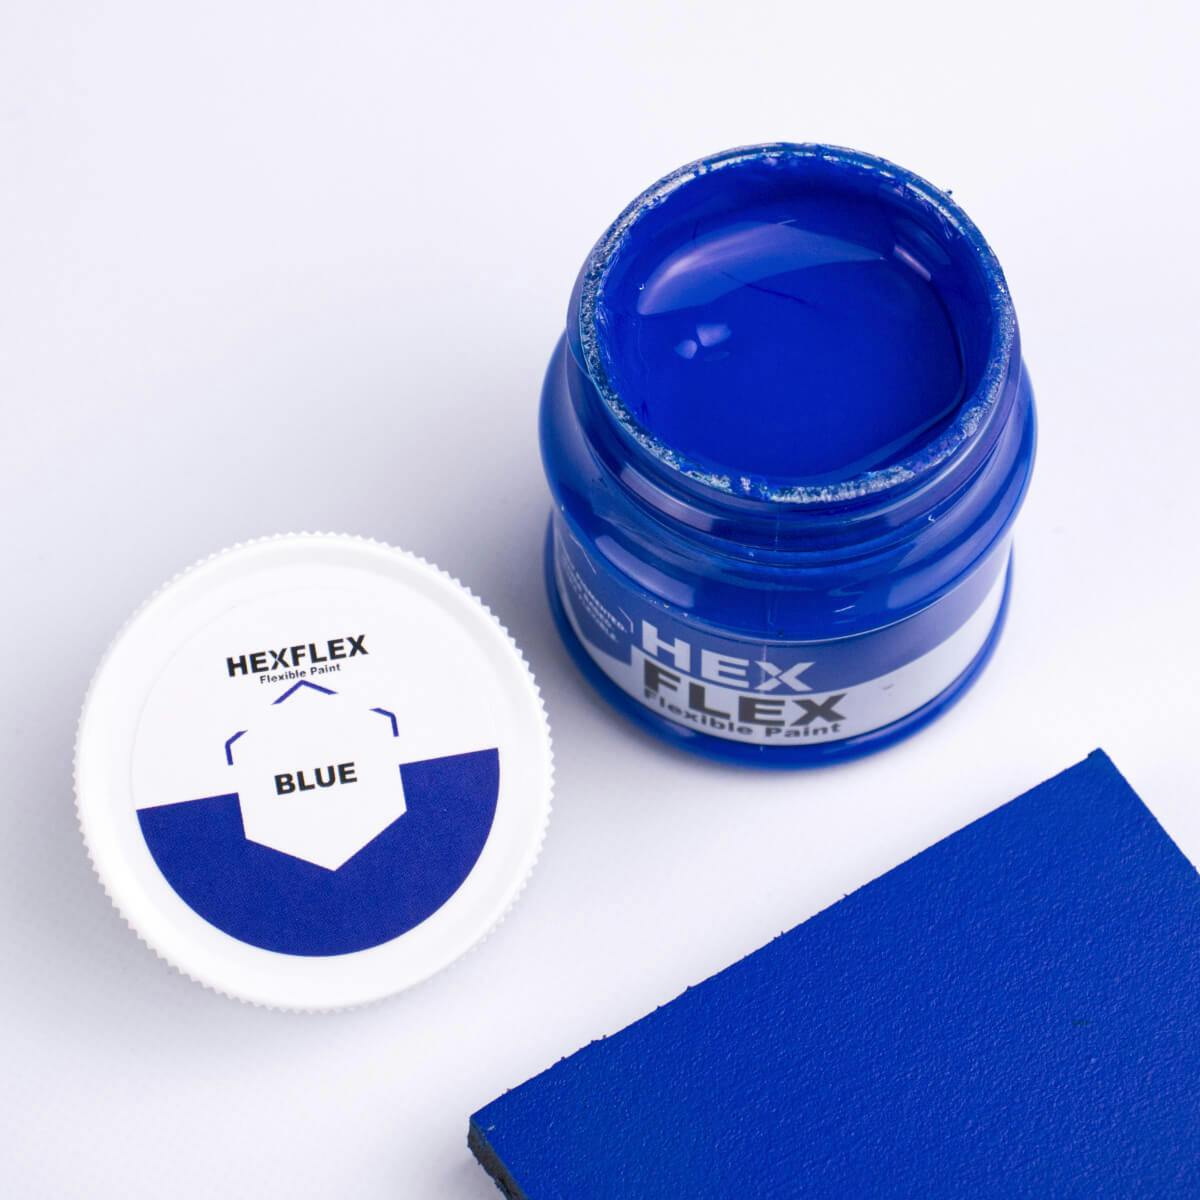 The bottle, cap and blue HexFlex colour sample